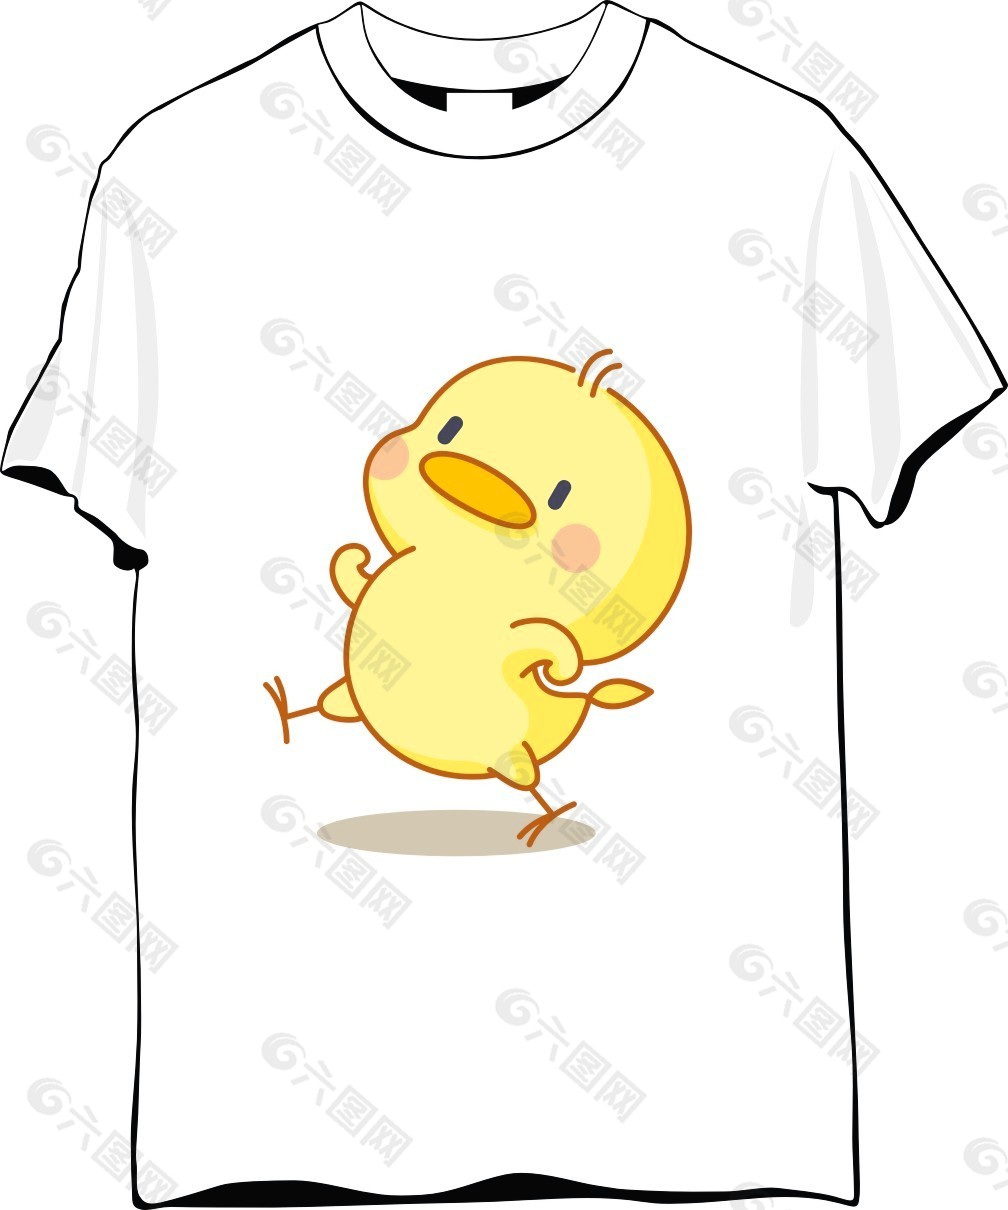 小鸡纪念T恤设计